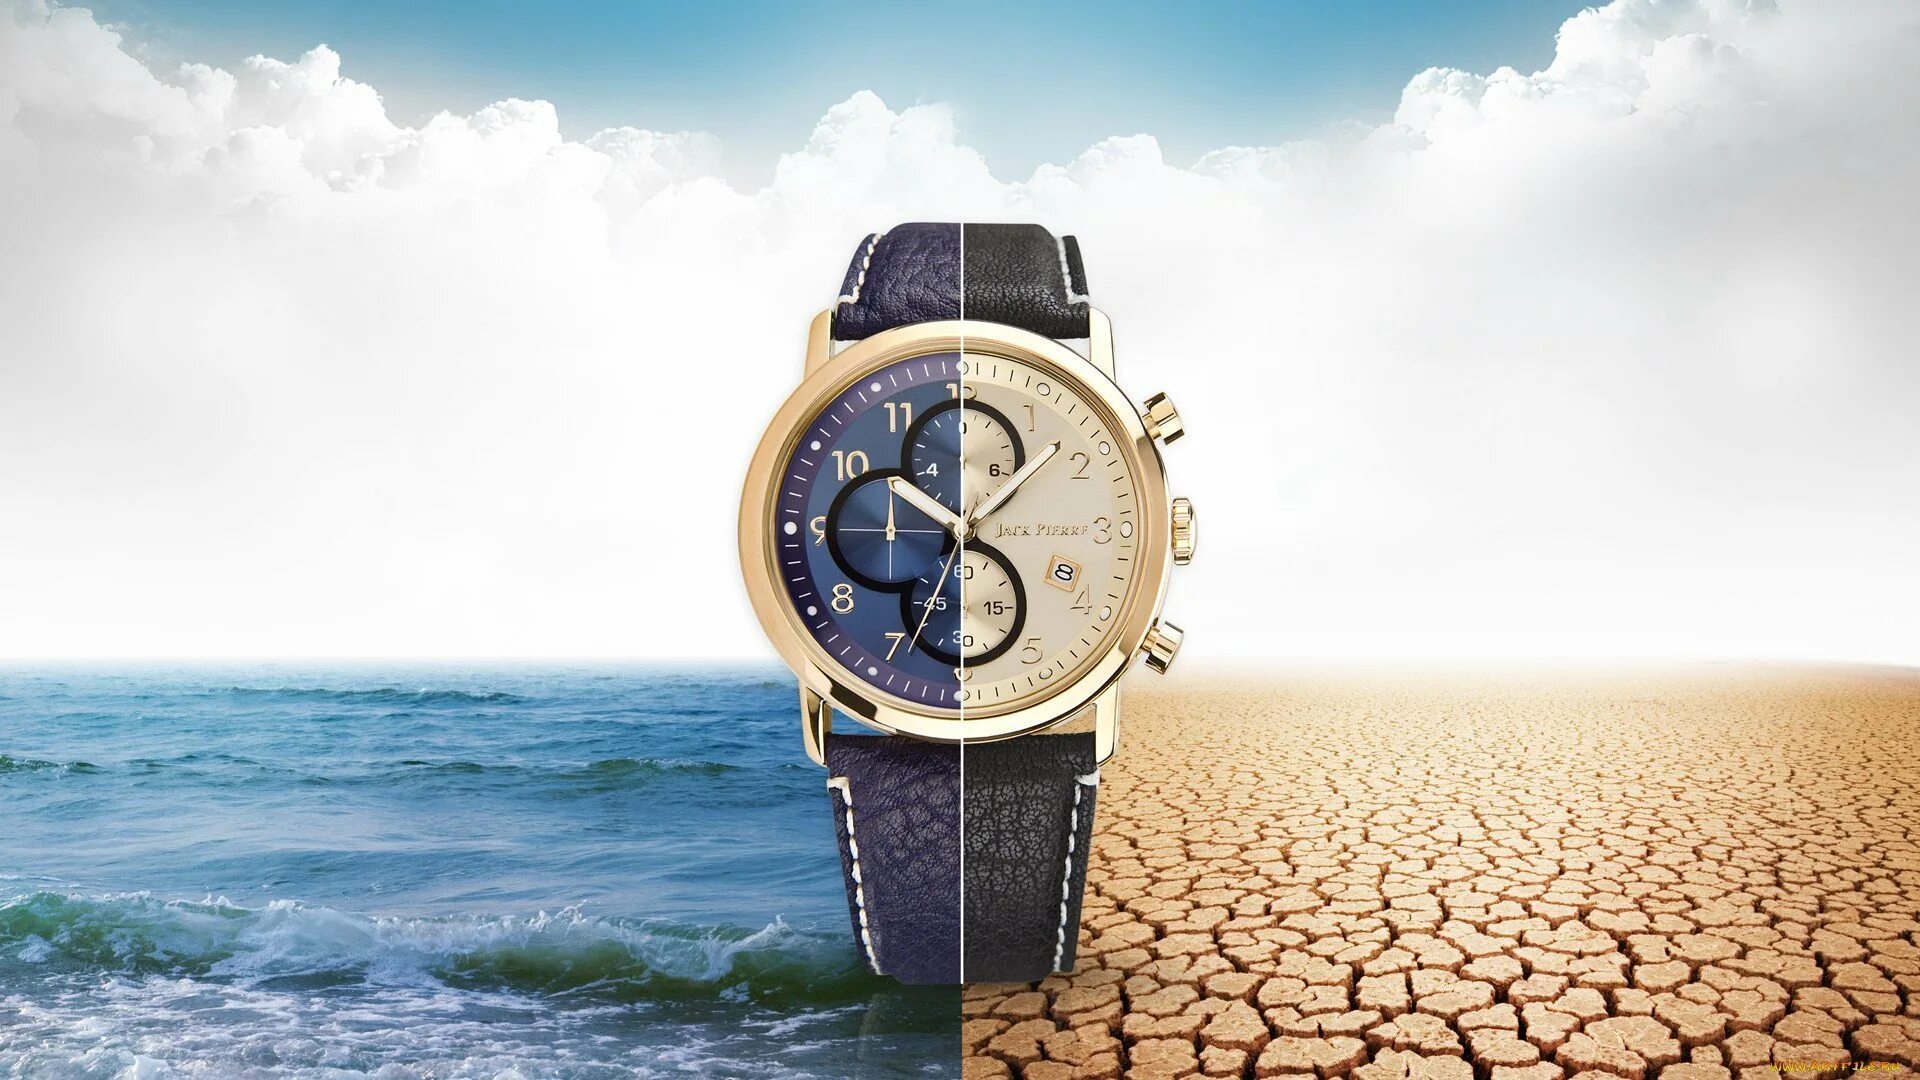 Реклама сайта часов. Наручные часы баннер. Обои с часами. Швейцарские часы. Красивый фон с часами.